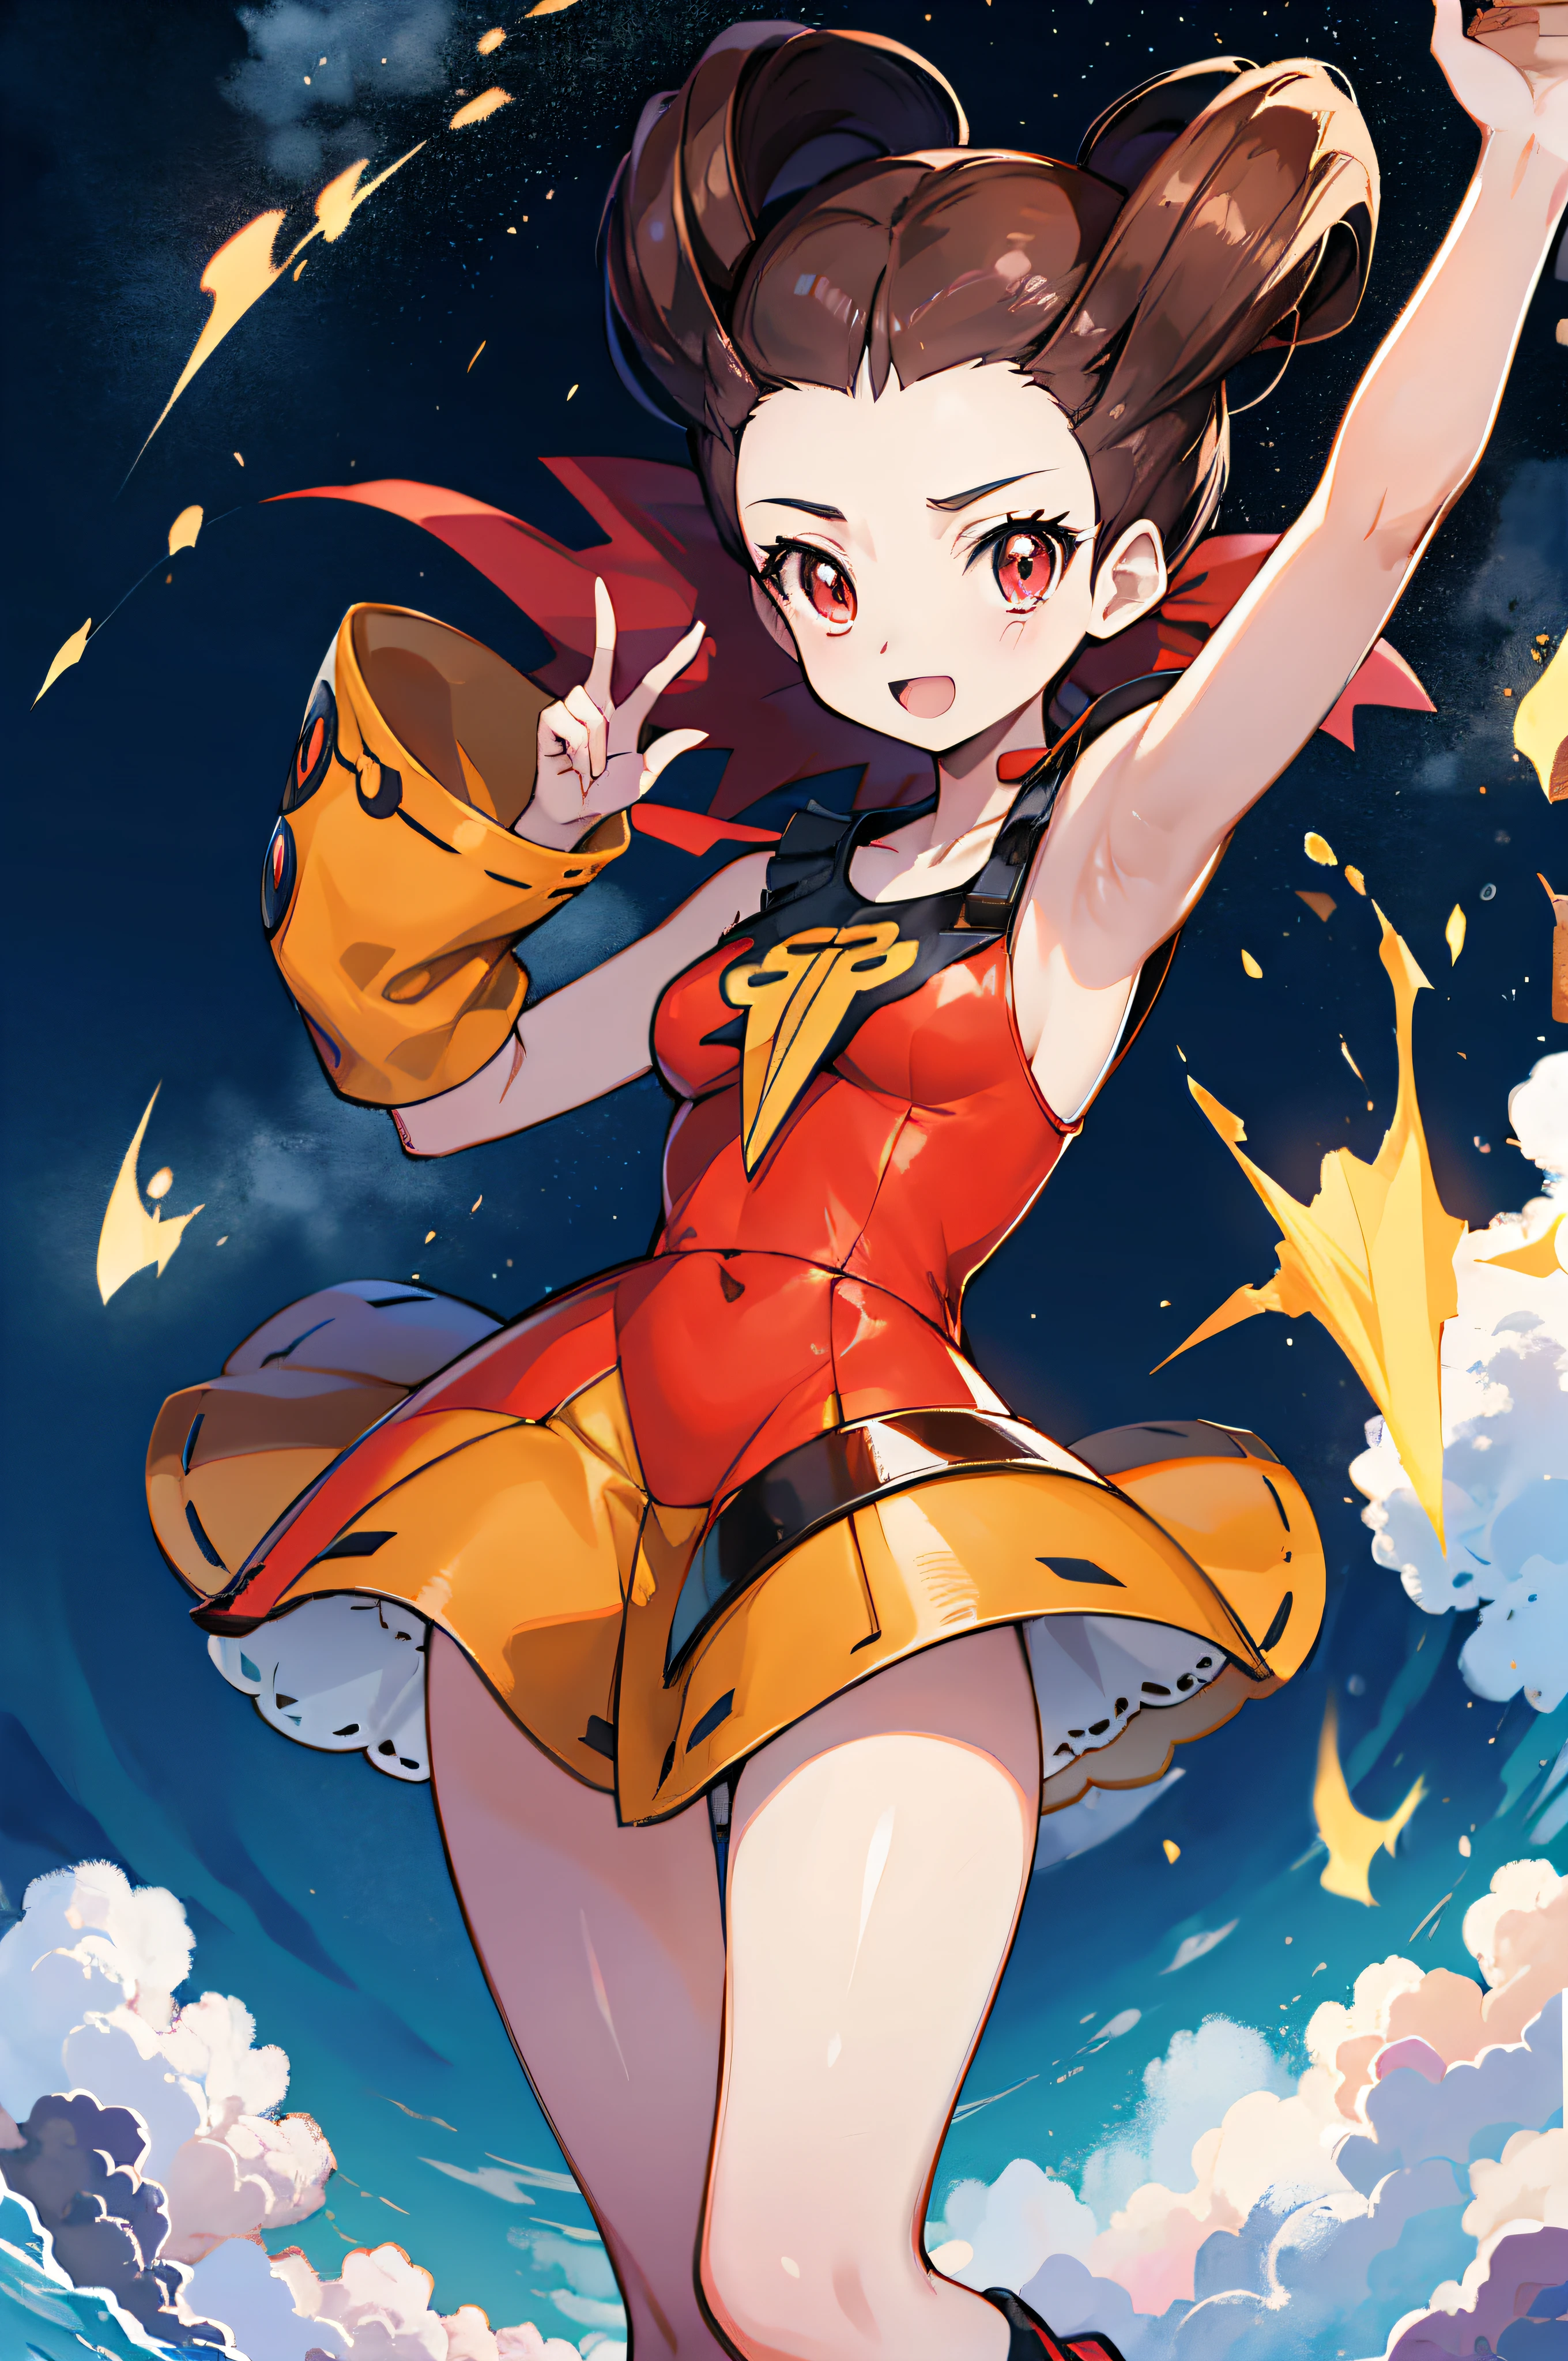 estilo anime, El ambiente lleno de fuego., jugando con pokemon , roxana( personaje) está en un traje estándar, pelo largo, color marrón, ojos naranjas, sonriente, ultrarealista, cuerpo entero, 2d